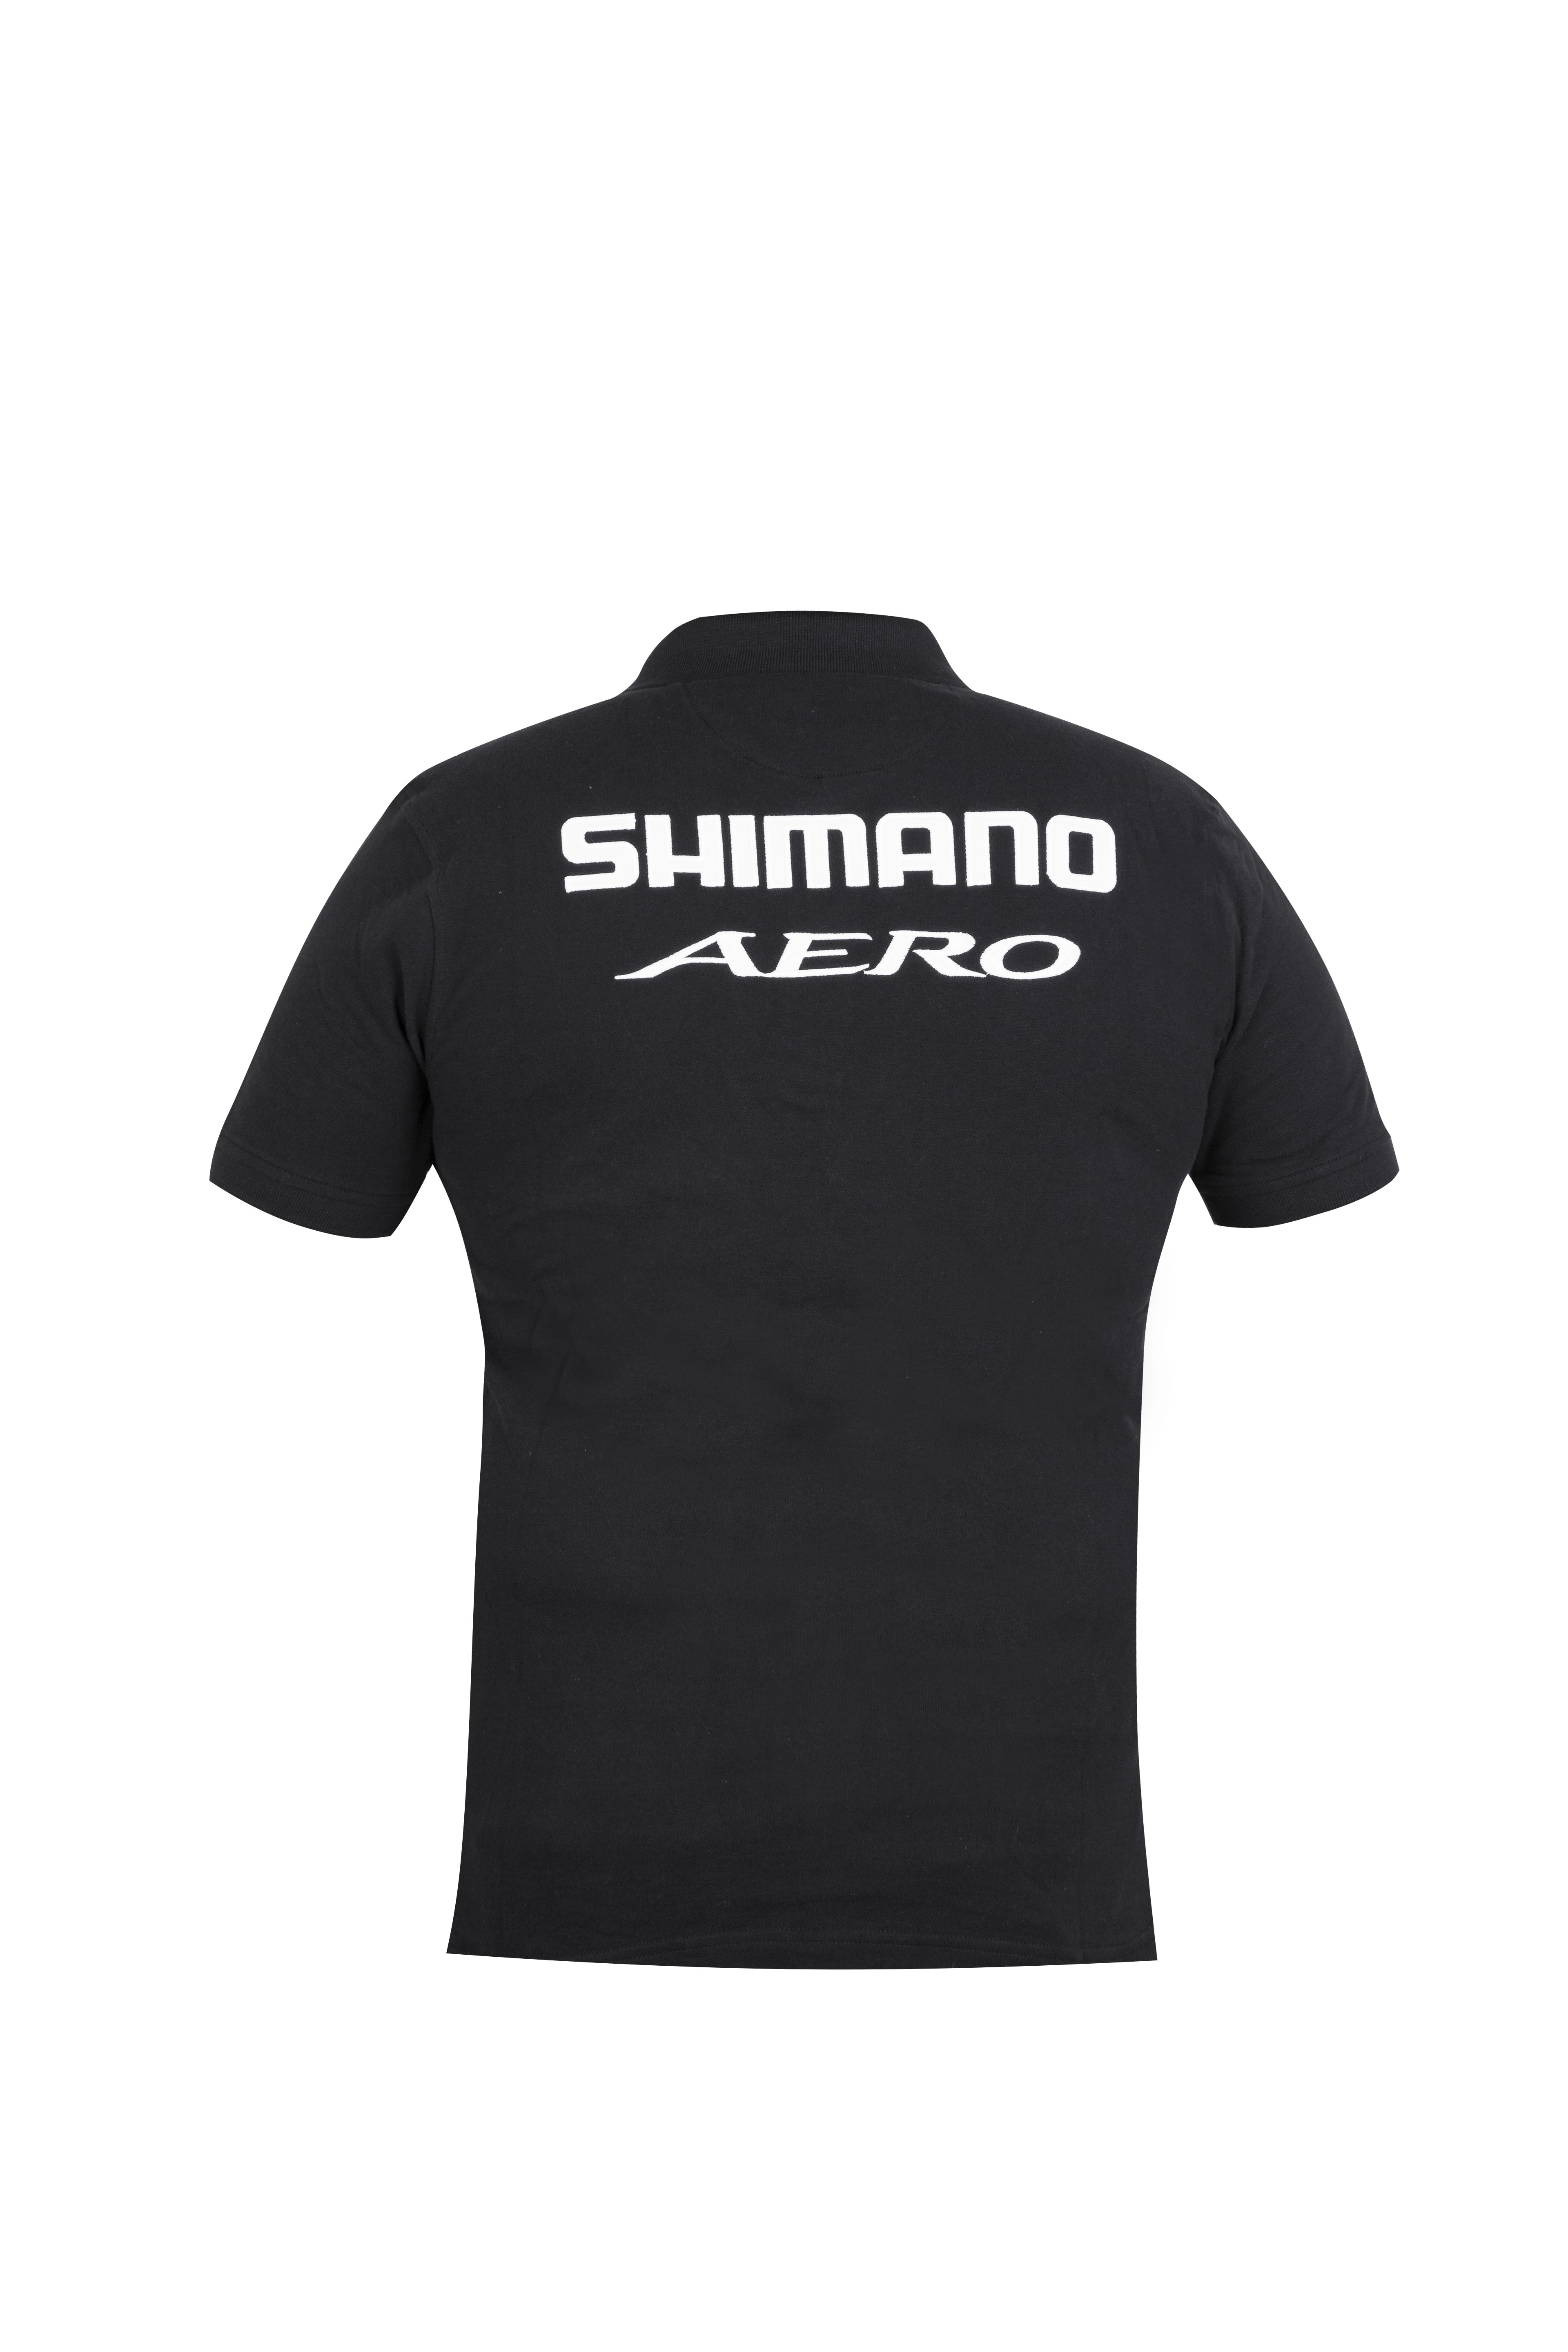 Shimano Aero Polo 2020 Schwarz